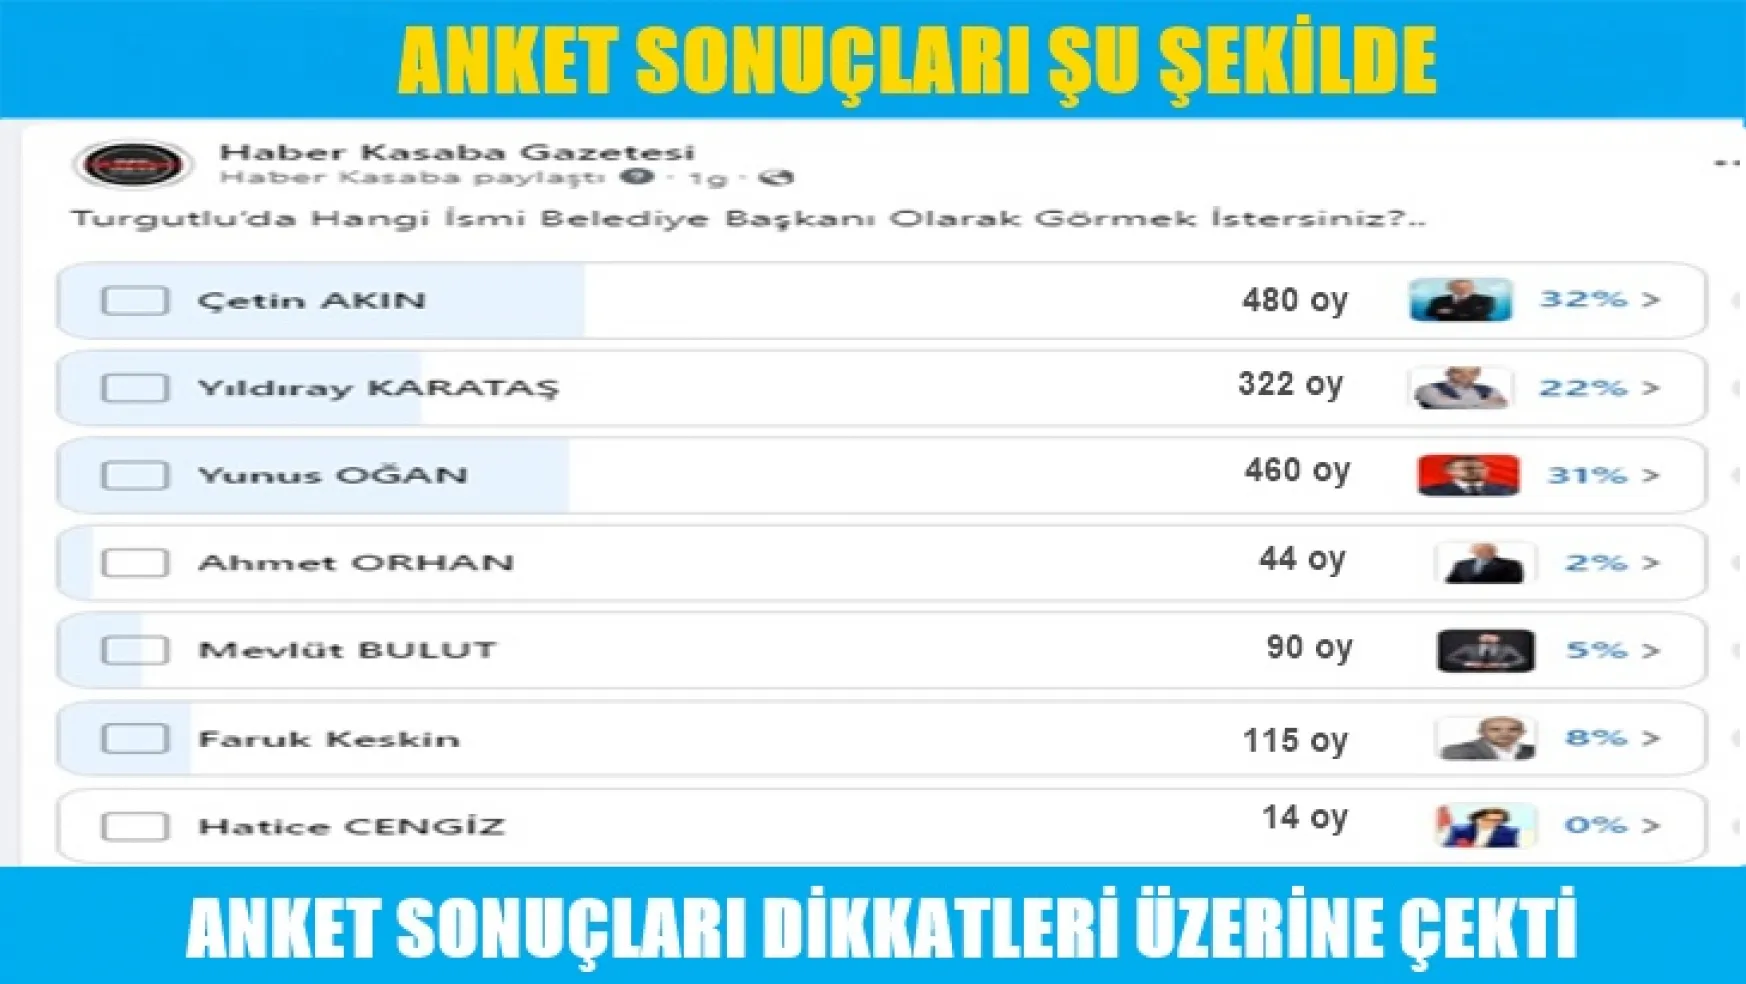 Turgutlu'da 'Hangi İsmi Belediye Başkanı Görmek İstesiniz' başlıklı Anket Sonuçlarını açıklıyoruz